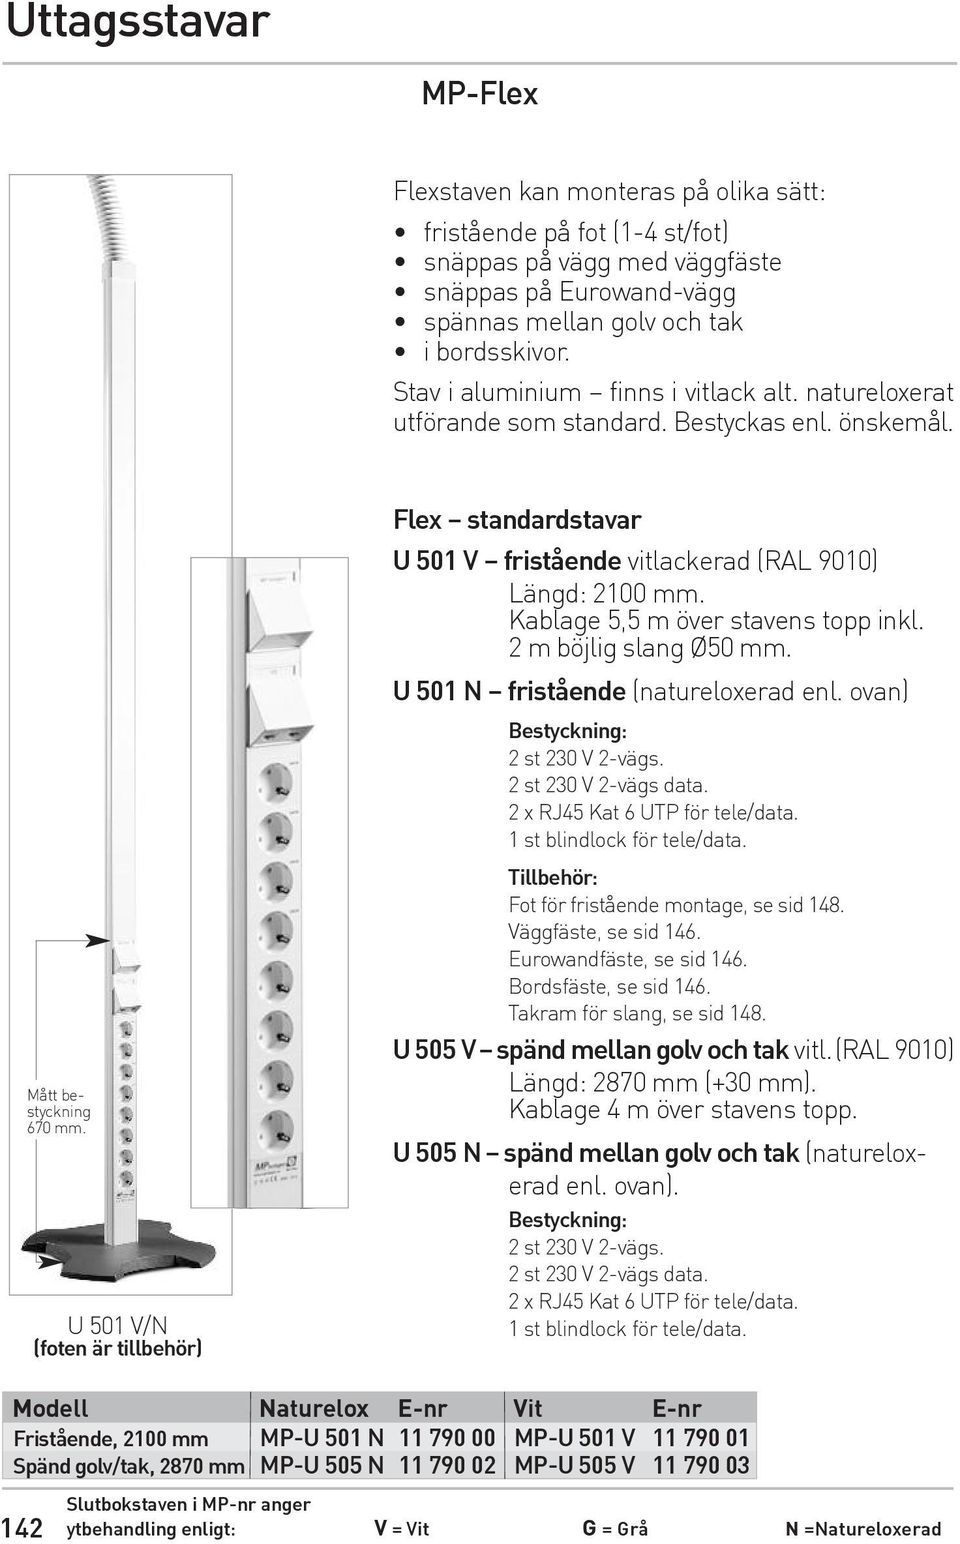 U 501 V/N (foten är tillbehör) Flex standardstavar U 501 V fristående vitlackerad (RAL 9010) Längd: 2100 mm. Kablage 5,5 m över stavens topp inkl. 2 m böjlig slang Ø50 mm.